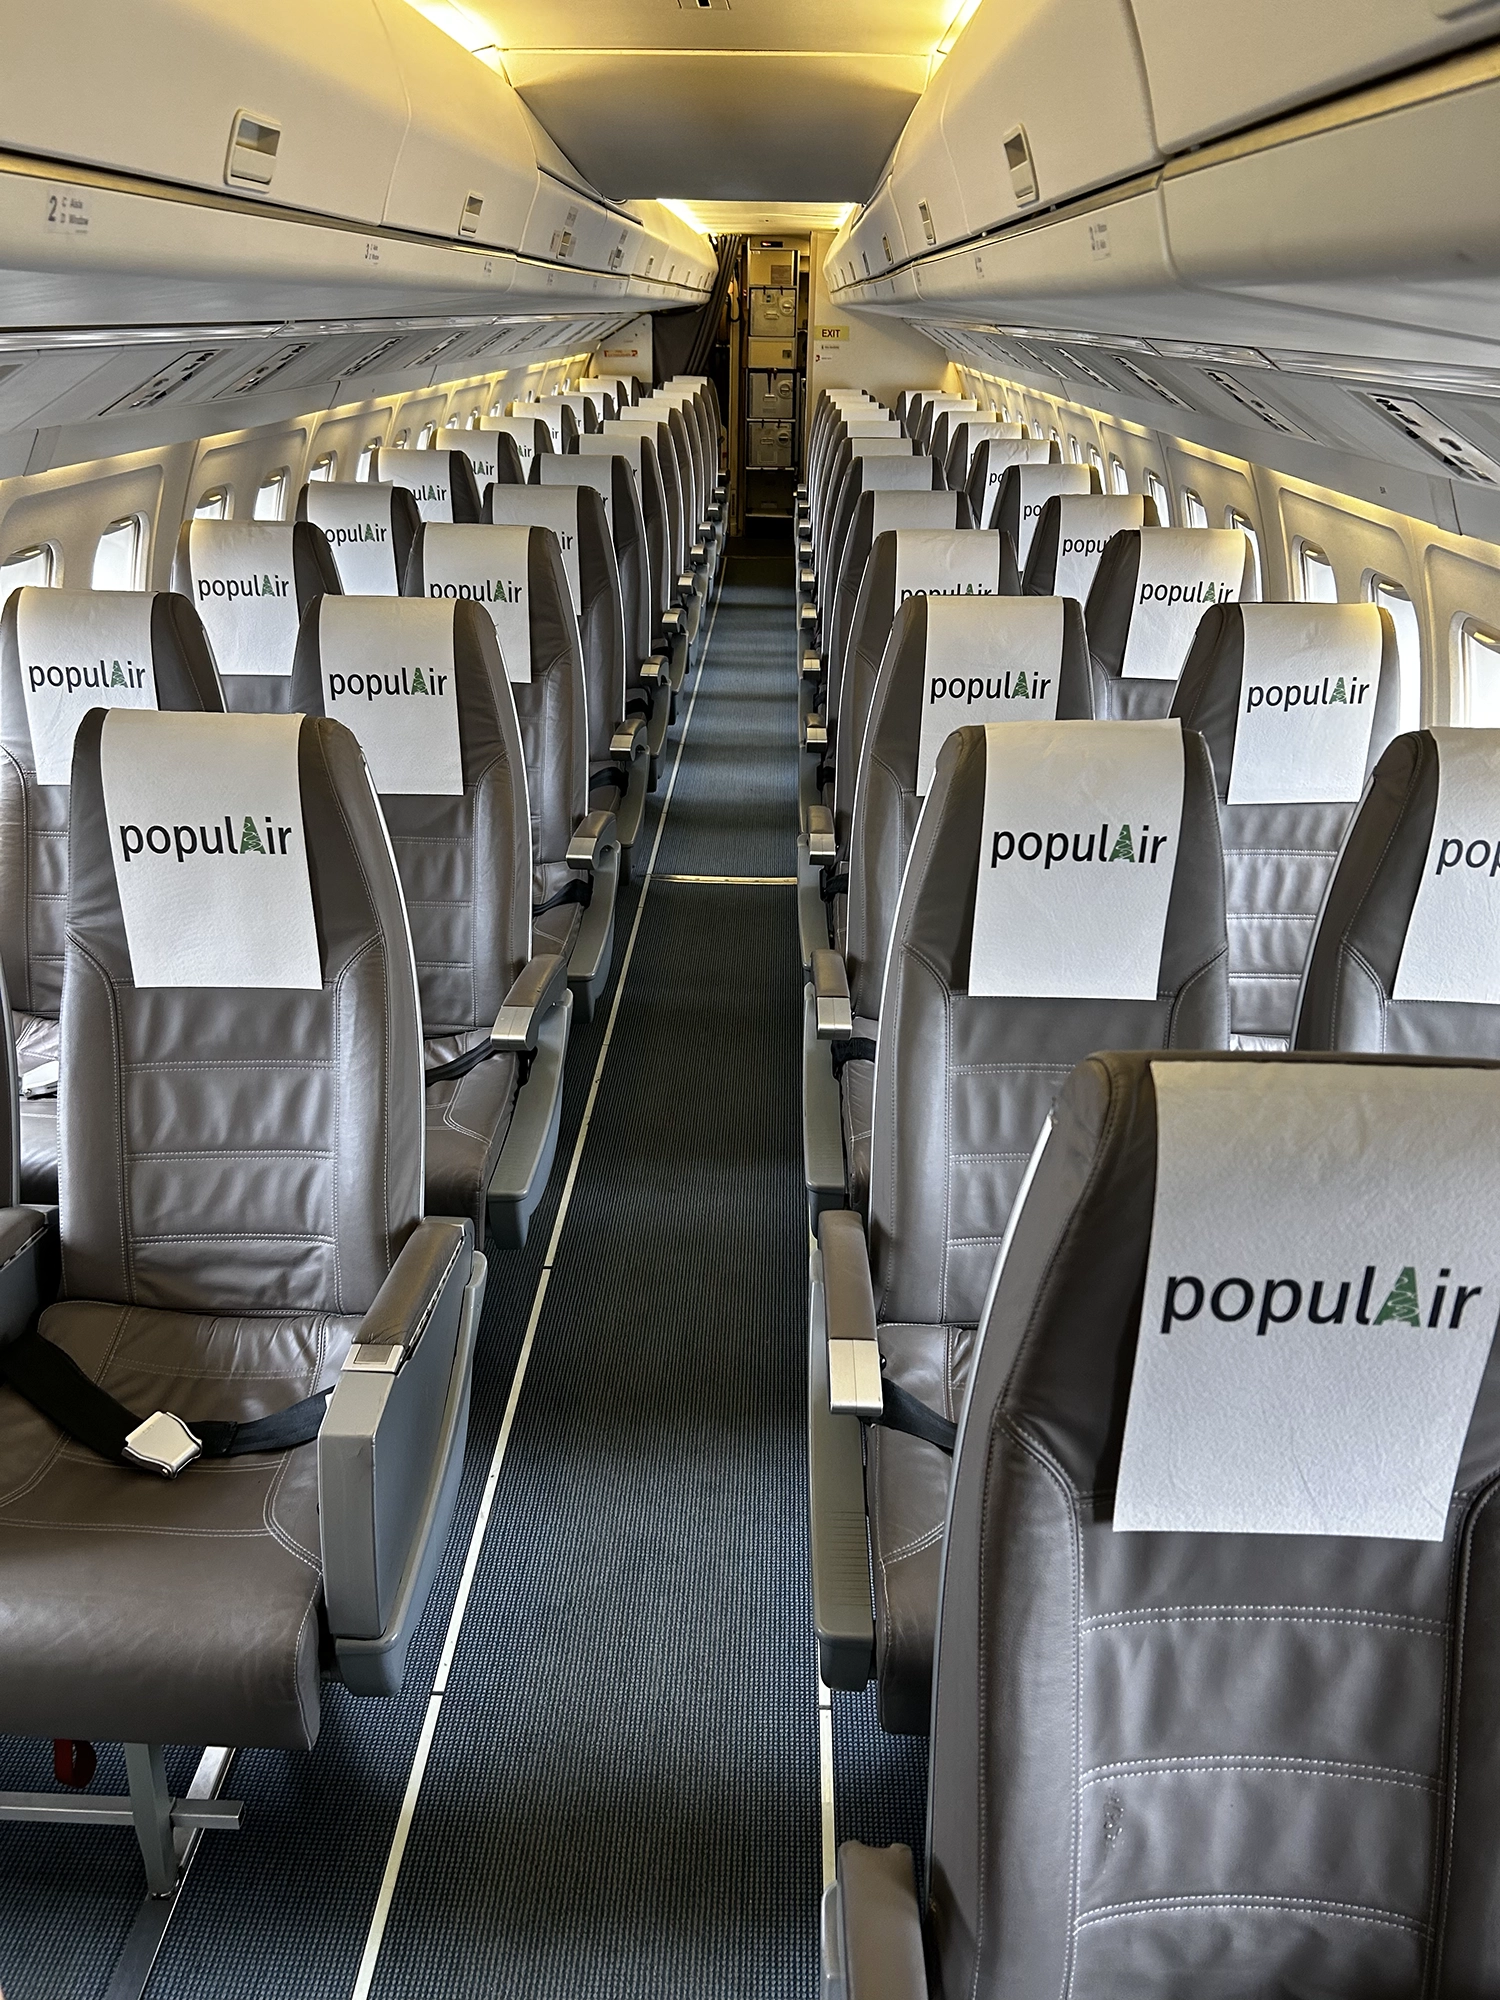 Fokker 50 interiör - rena grå säten, blågrå mittgång och ljus, luftig känsla